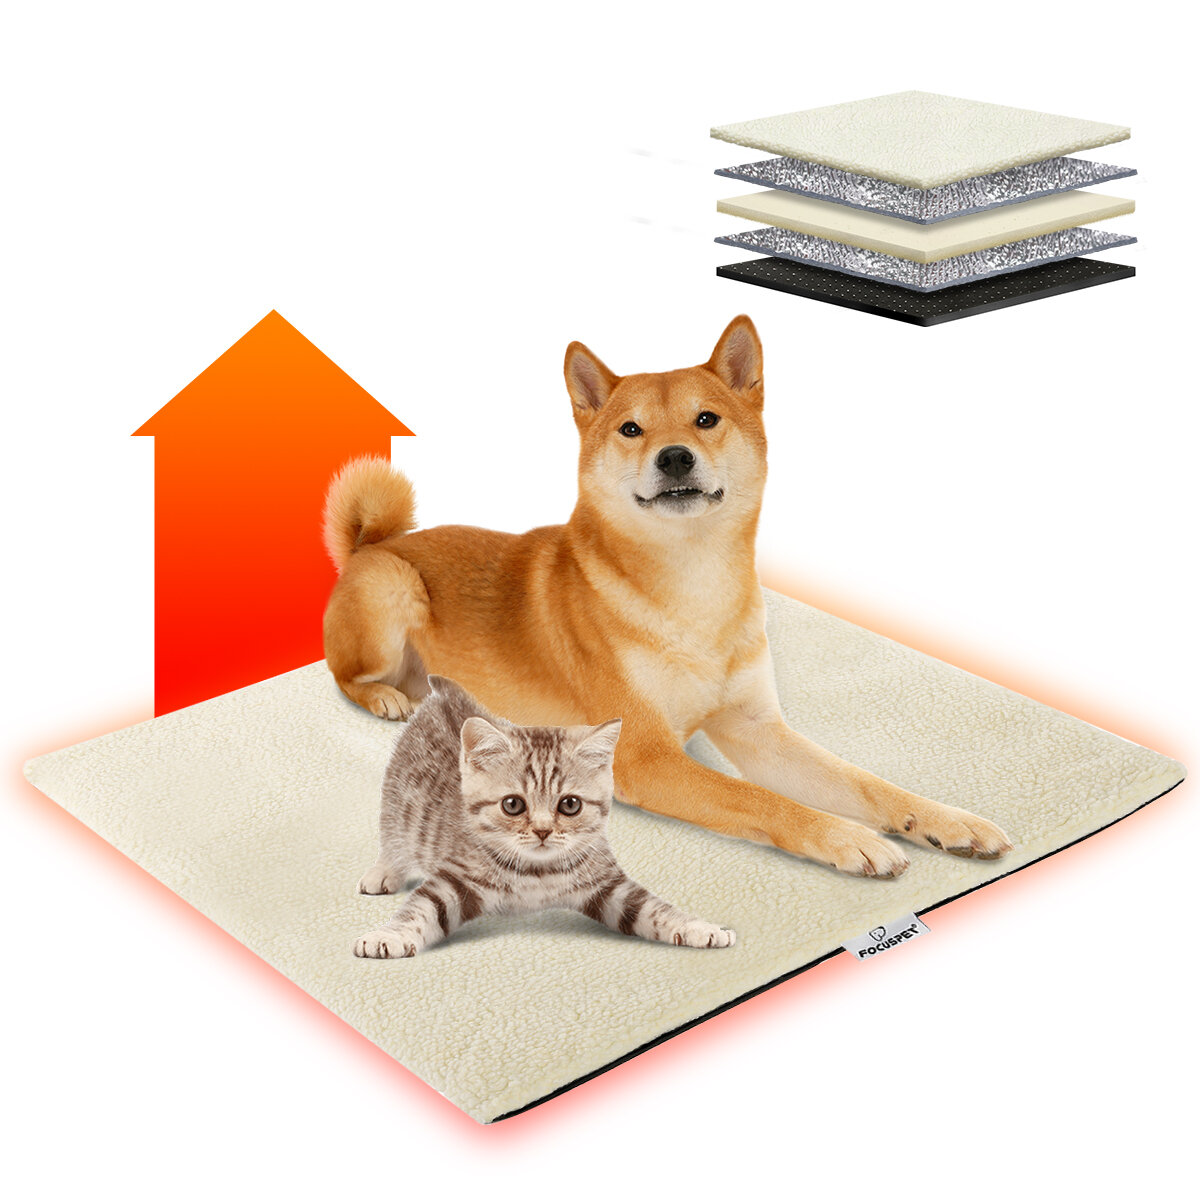 Focuspet zelfopwarming Deken Warming Deken Kat Honden Huisdieren Warming Mat Kat met antislip Ontwer